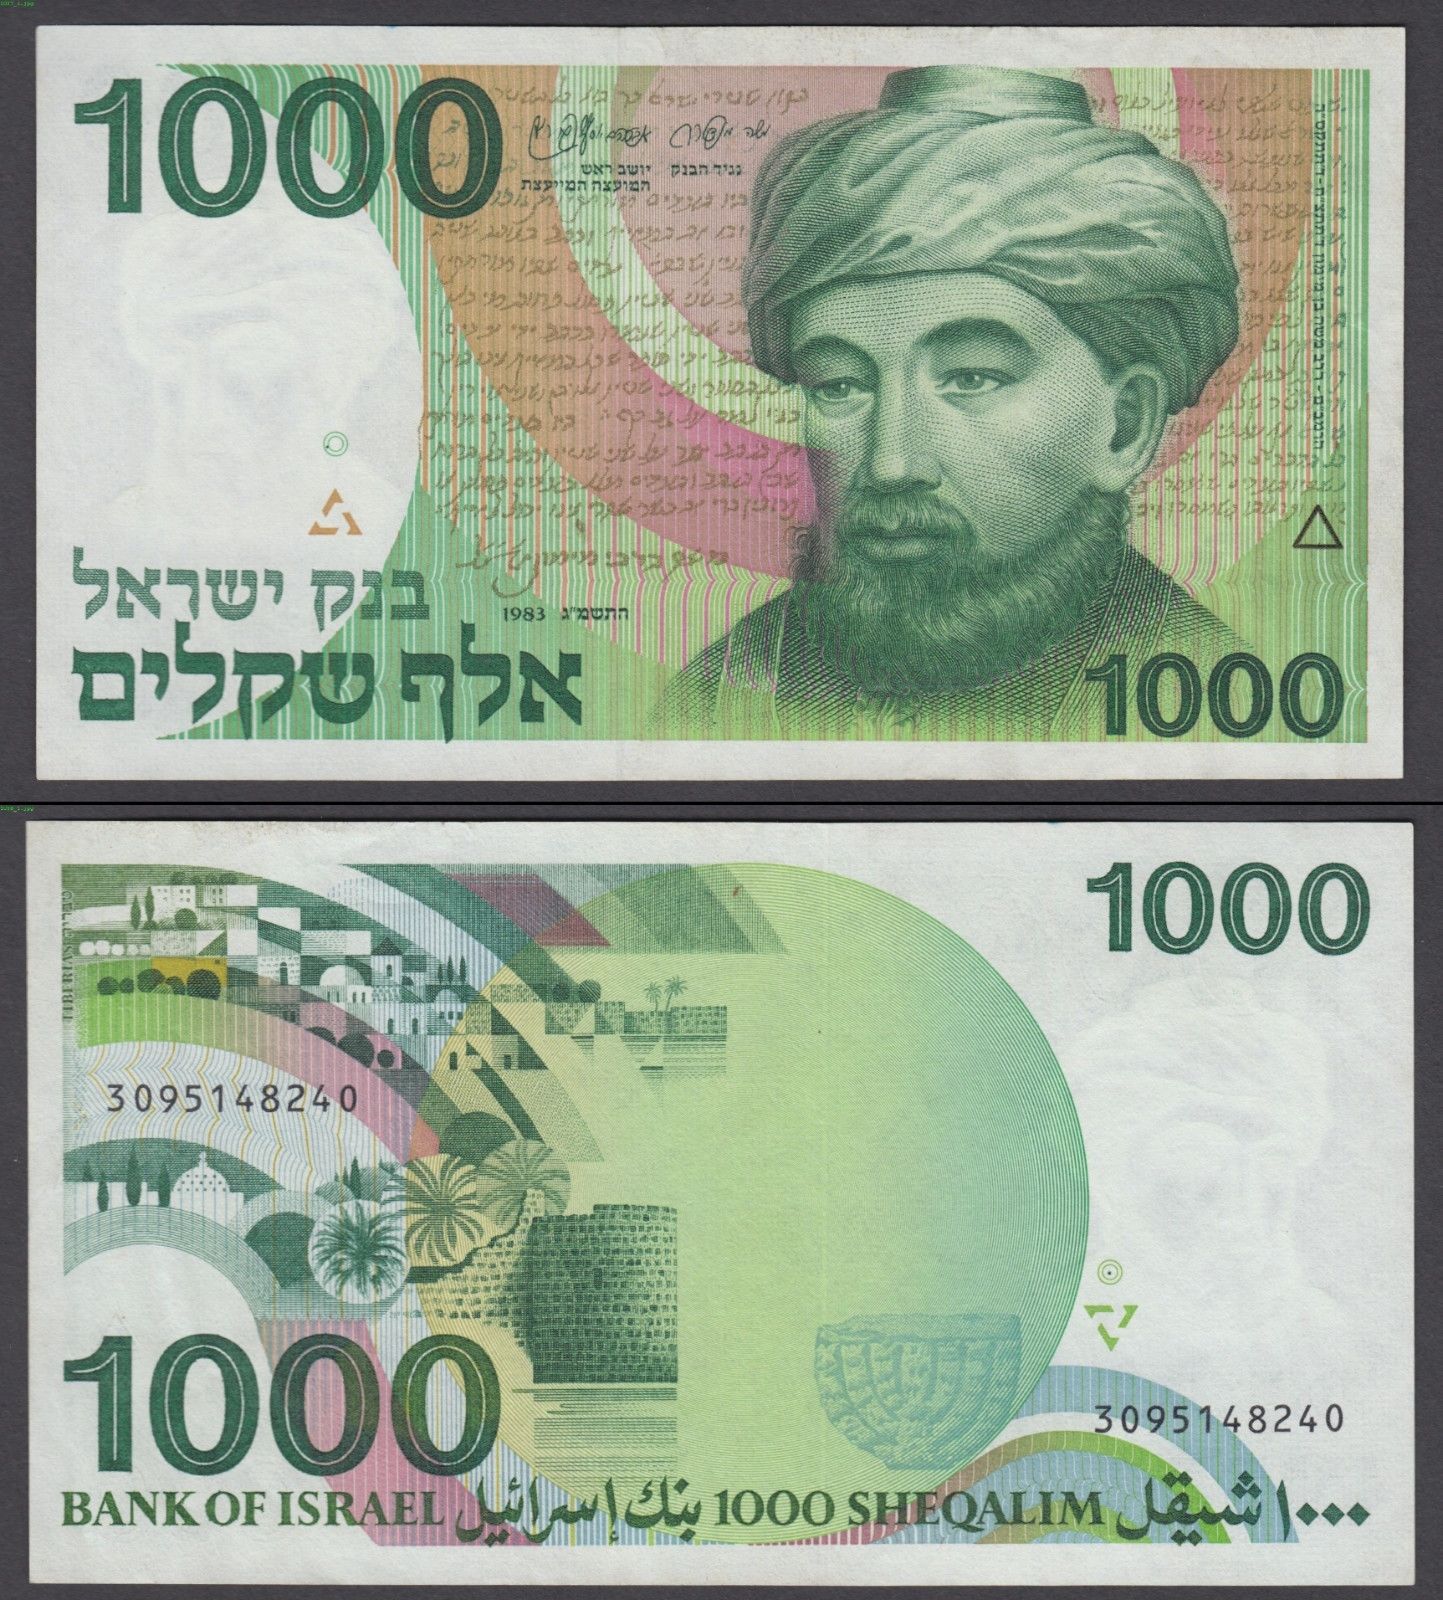 Еврейские деньги. Шекели купюры. Израильские бумажные деньги. Израильский шекель купюры. Новый израильский шекель банкноты.